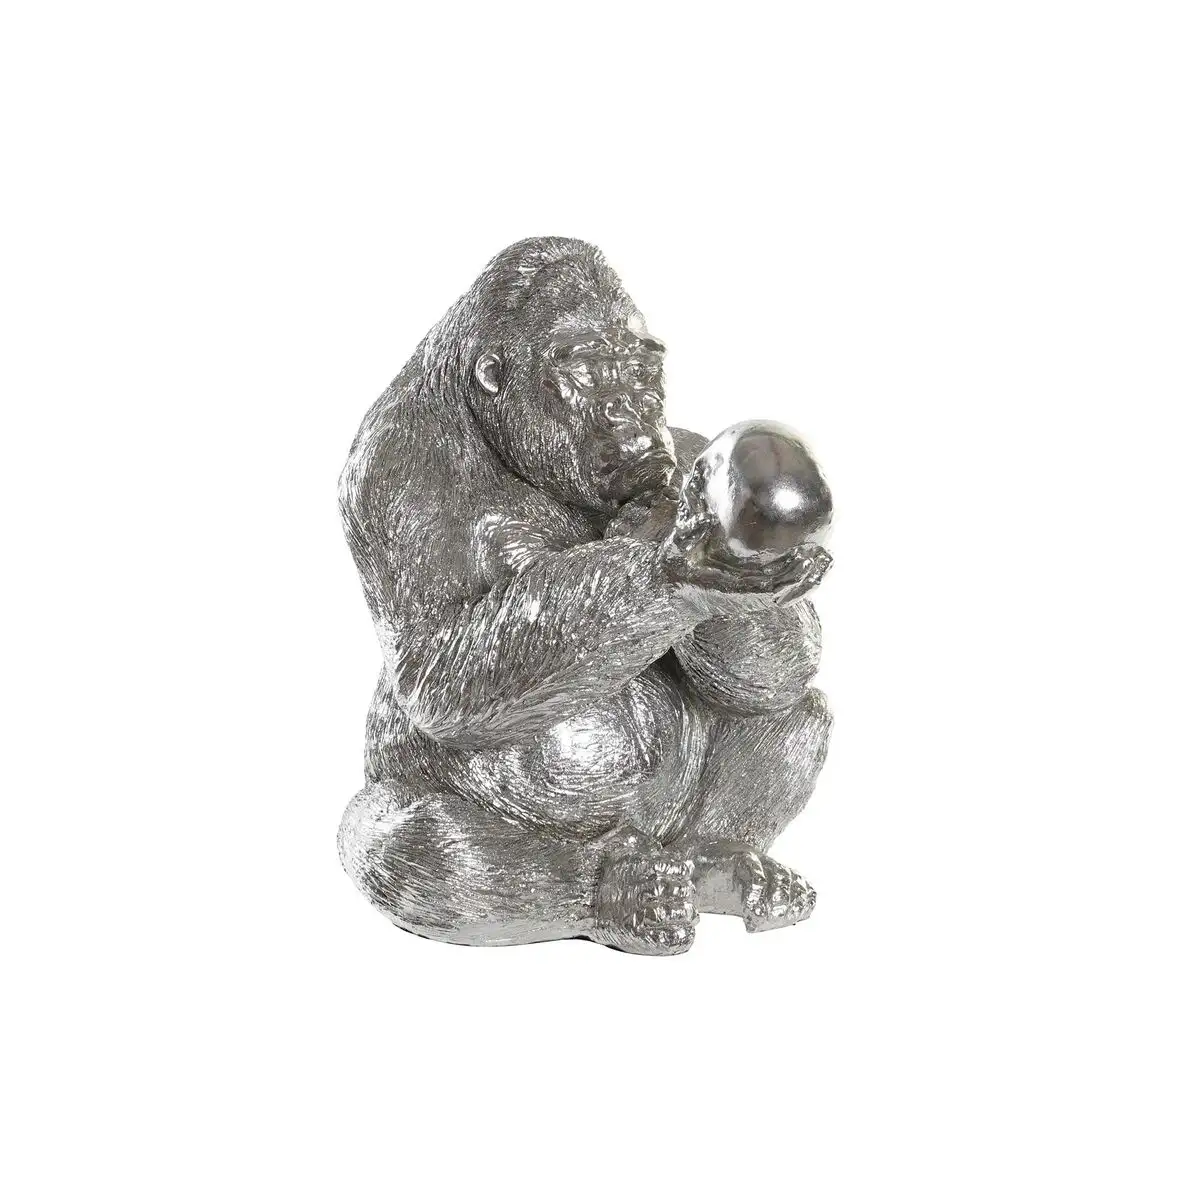 Figurine decorative dkd home decor argente resine gorille 38 5 x 33 x 43 5 cm _3912. DIAYTAR SENEGAL - L'Art de Vivre l'Excellence au Quotidien. Explorez notre gamme et choisissez des produits qui ajoutent une note de prestige à votre vie.